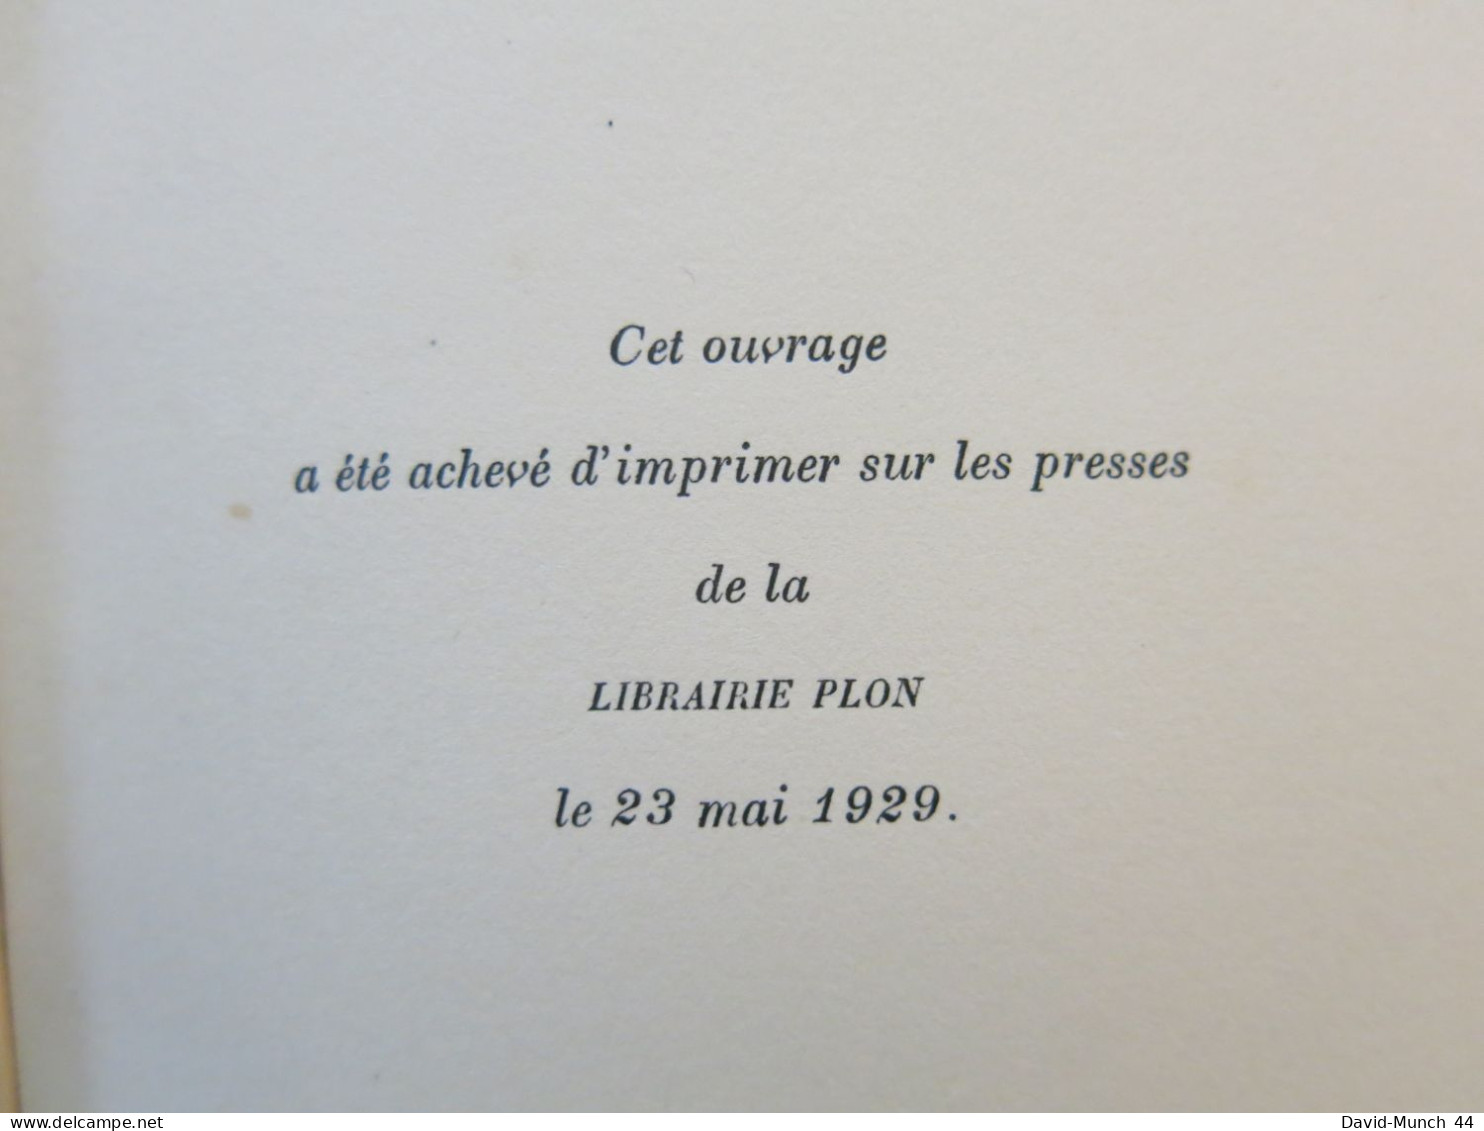 Mangin du Général Weygand. Paris, Librairie Plon. 1929, exemplaire numéroté